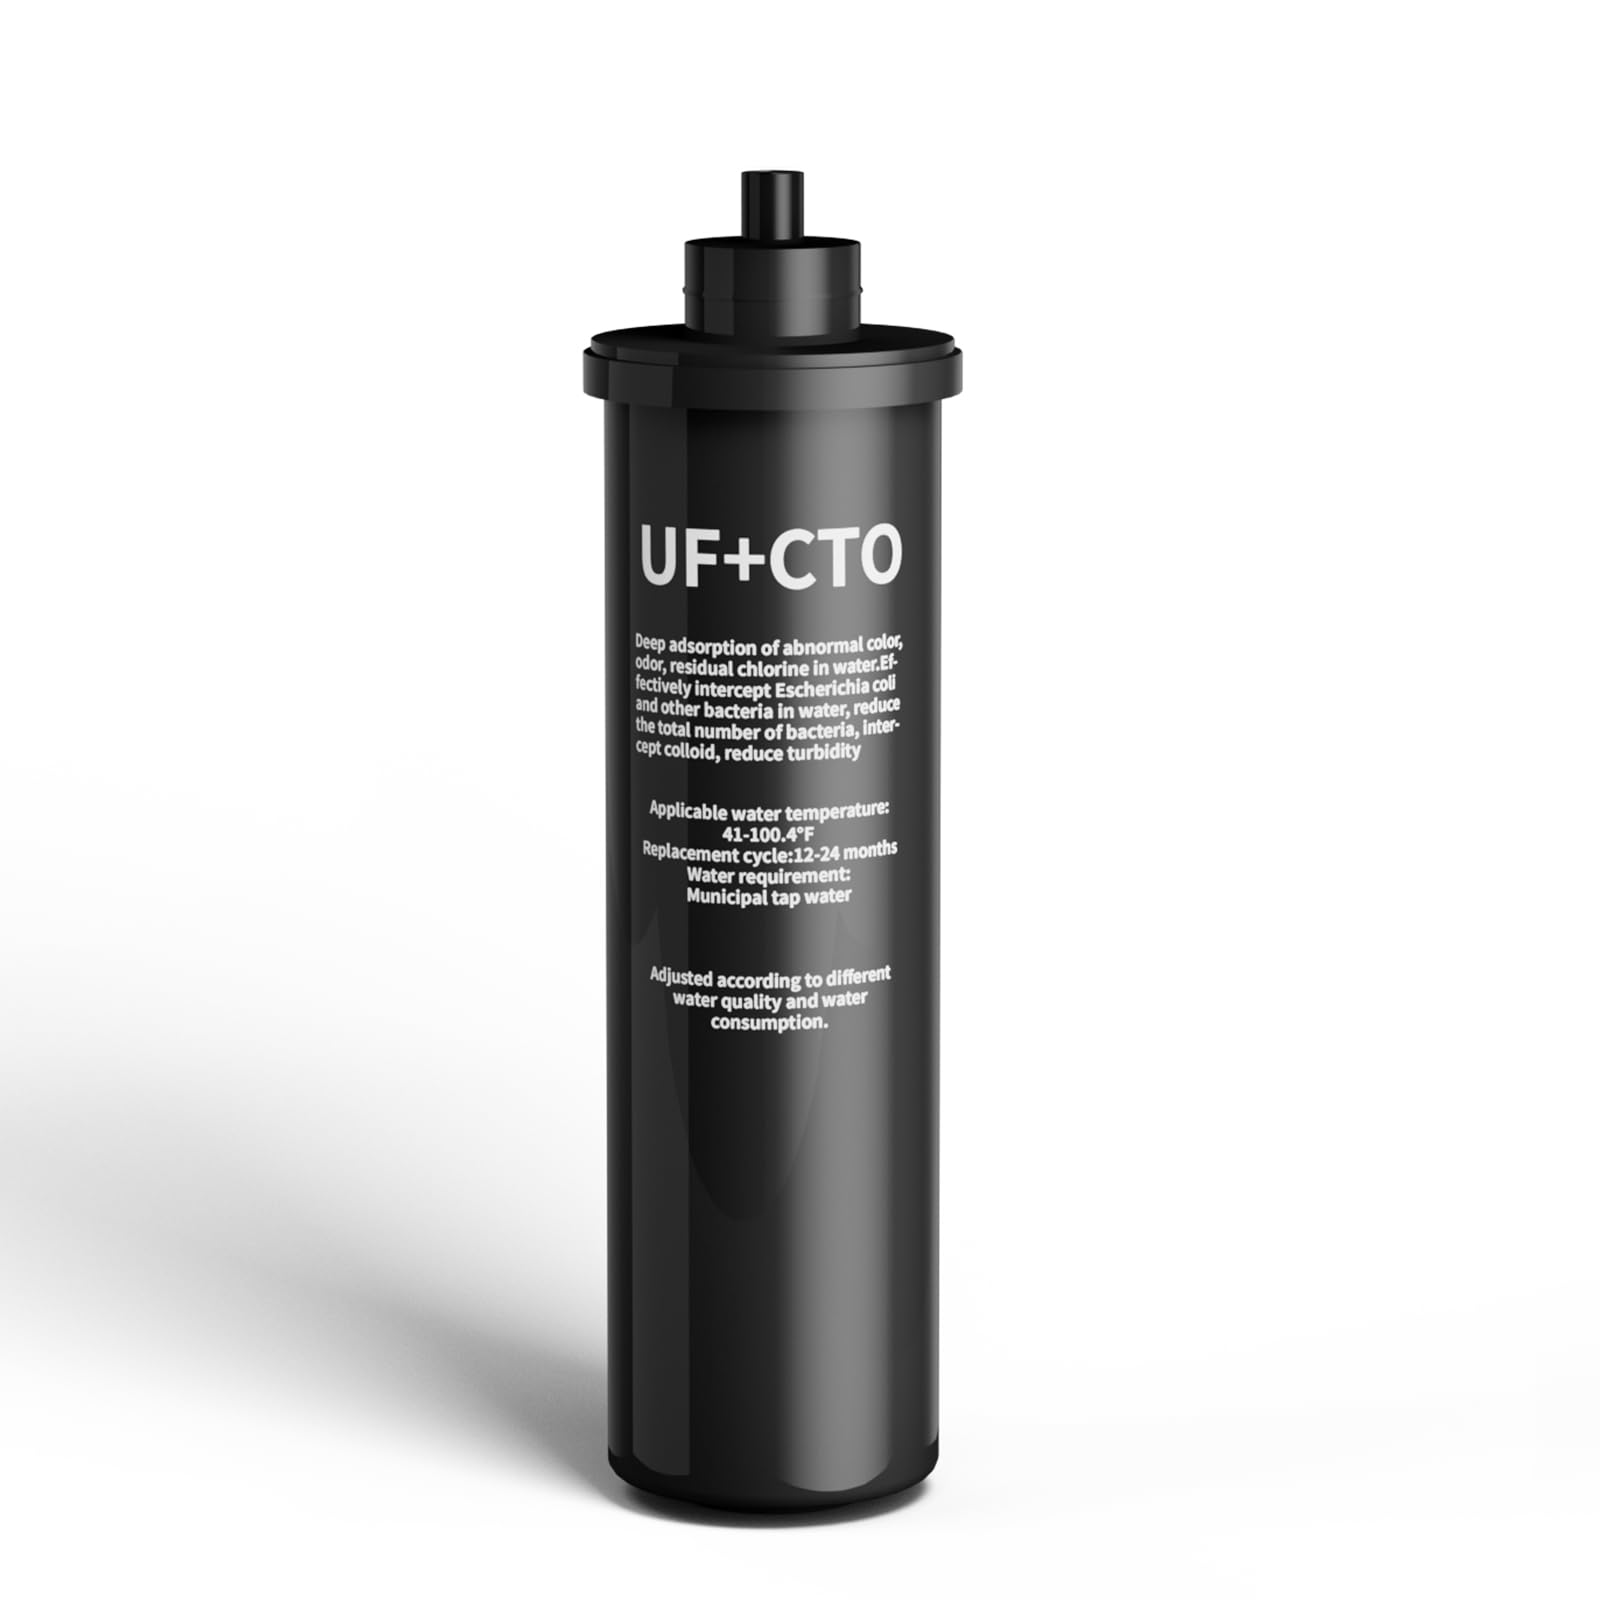 Replacement Filter for Q5-UF & Q6-UF Under Sink Water Filter ,Vortopt